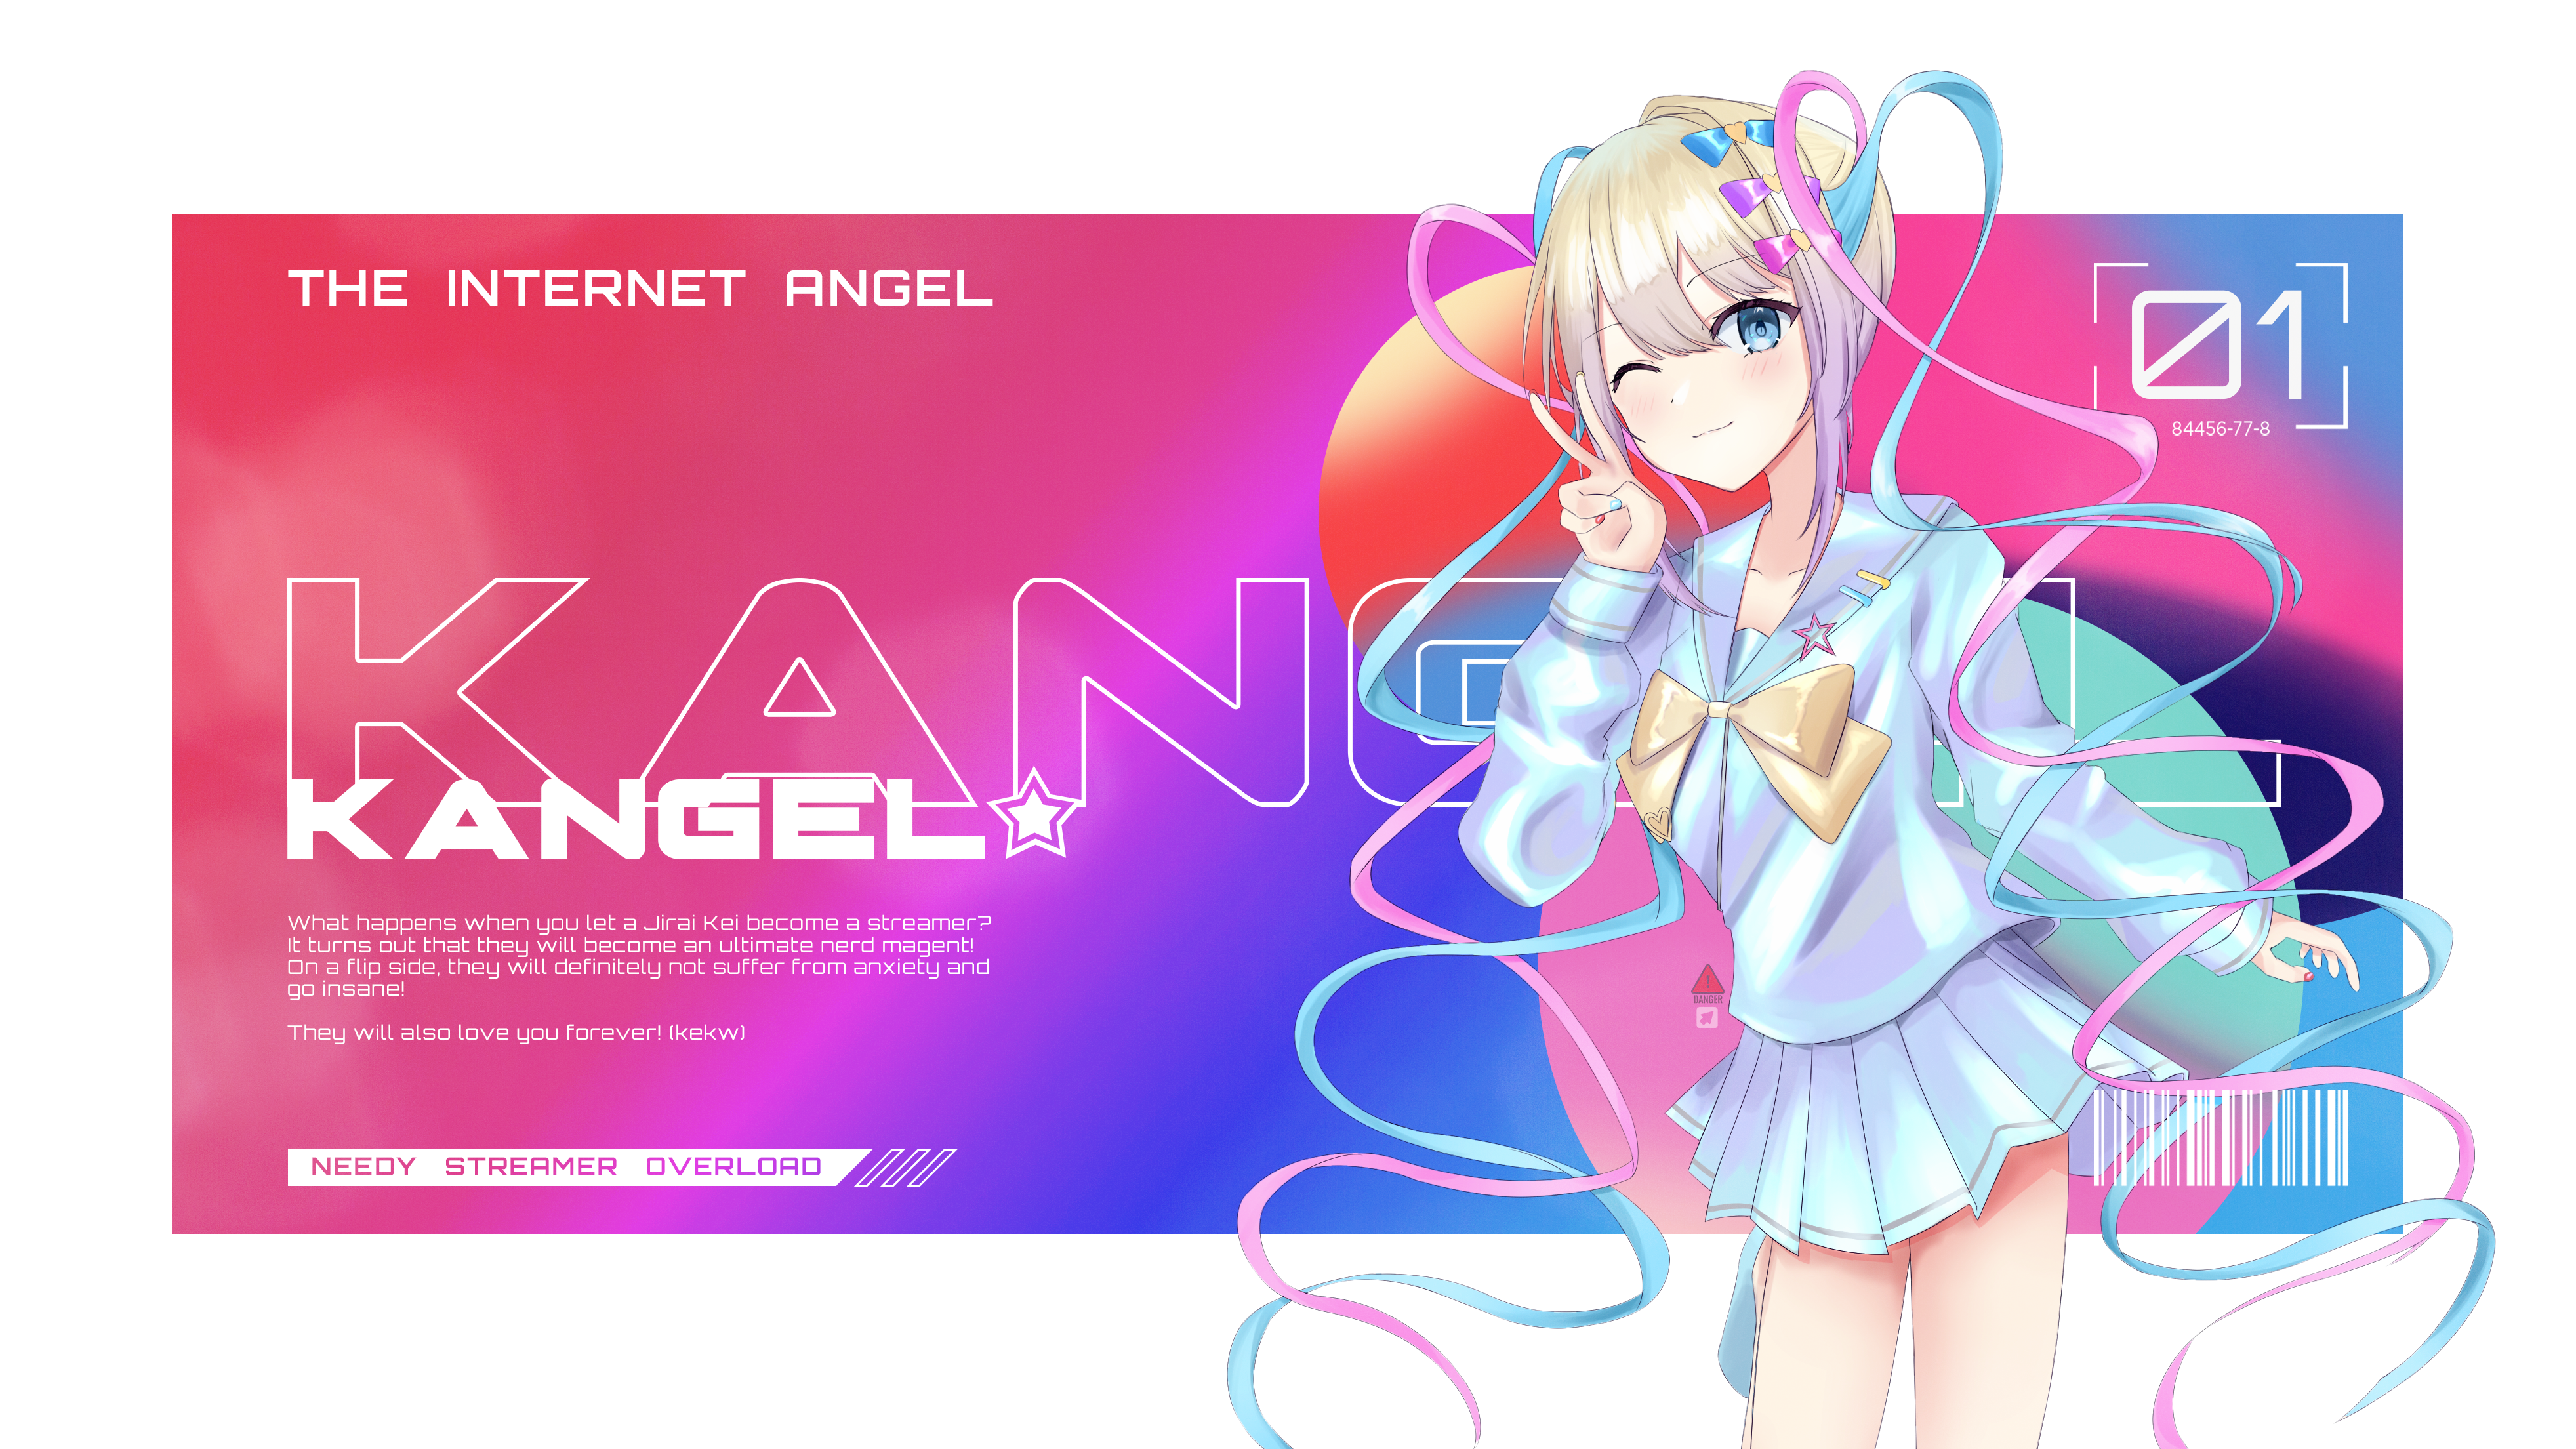 KAngel desktop wallpaper by VINNYLLL on DeviantArt